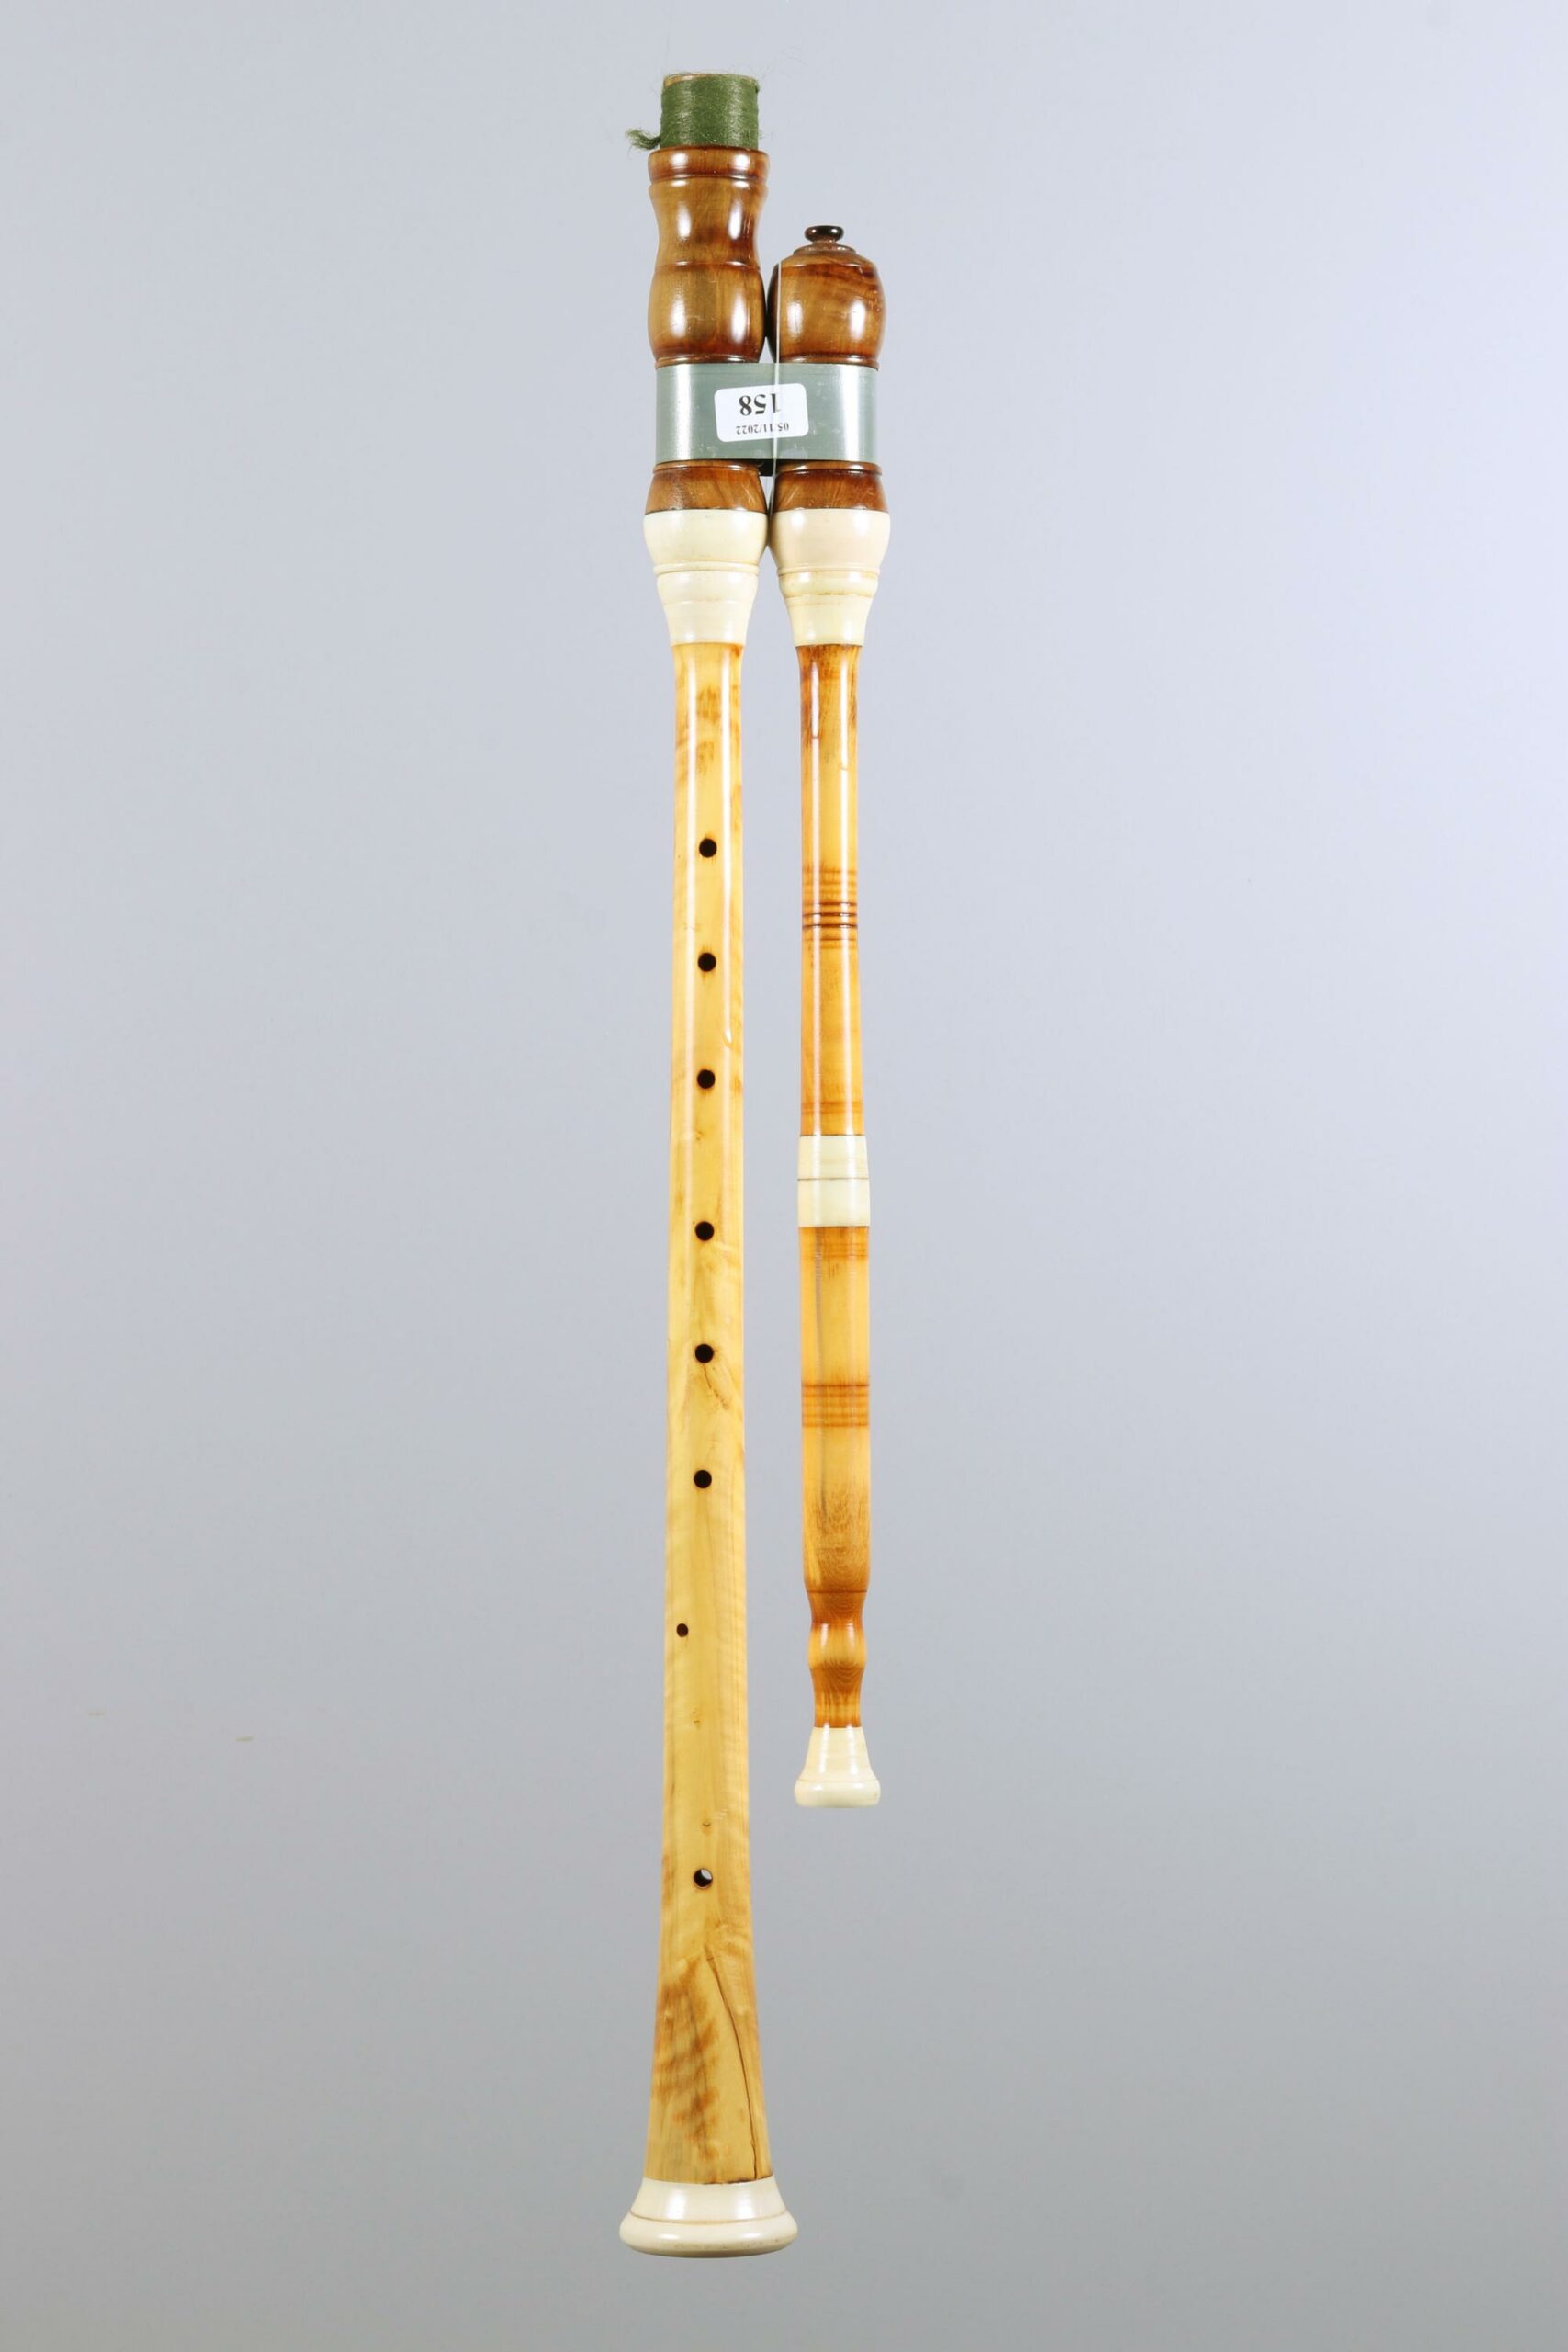 Pied de cabrette en buis, en SiB (44,5cm) de Joseph RUOLS Collection Joseph RUOLS Instrument mis en vente par Vichy Enchères le 5 novembre 2022 © C. Darbelet